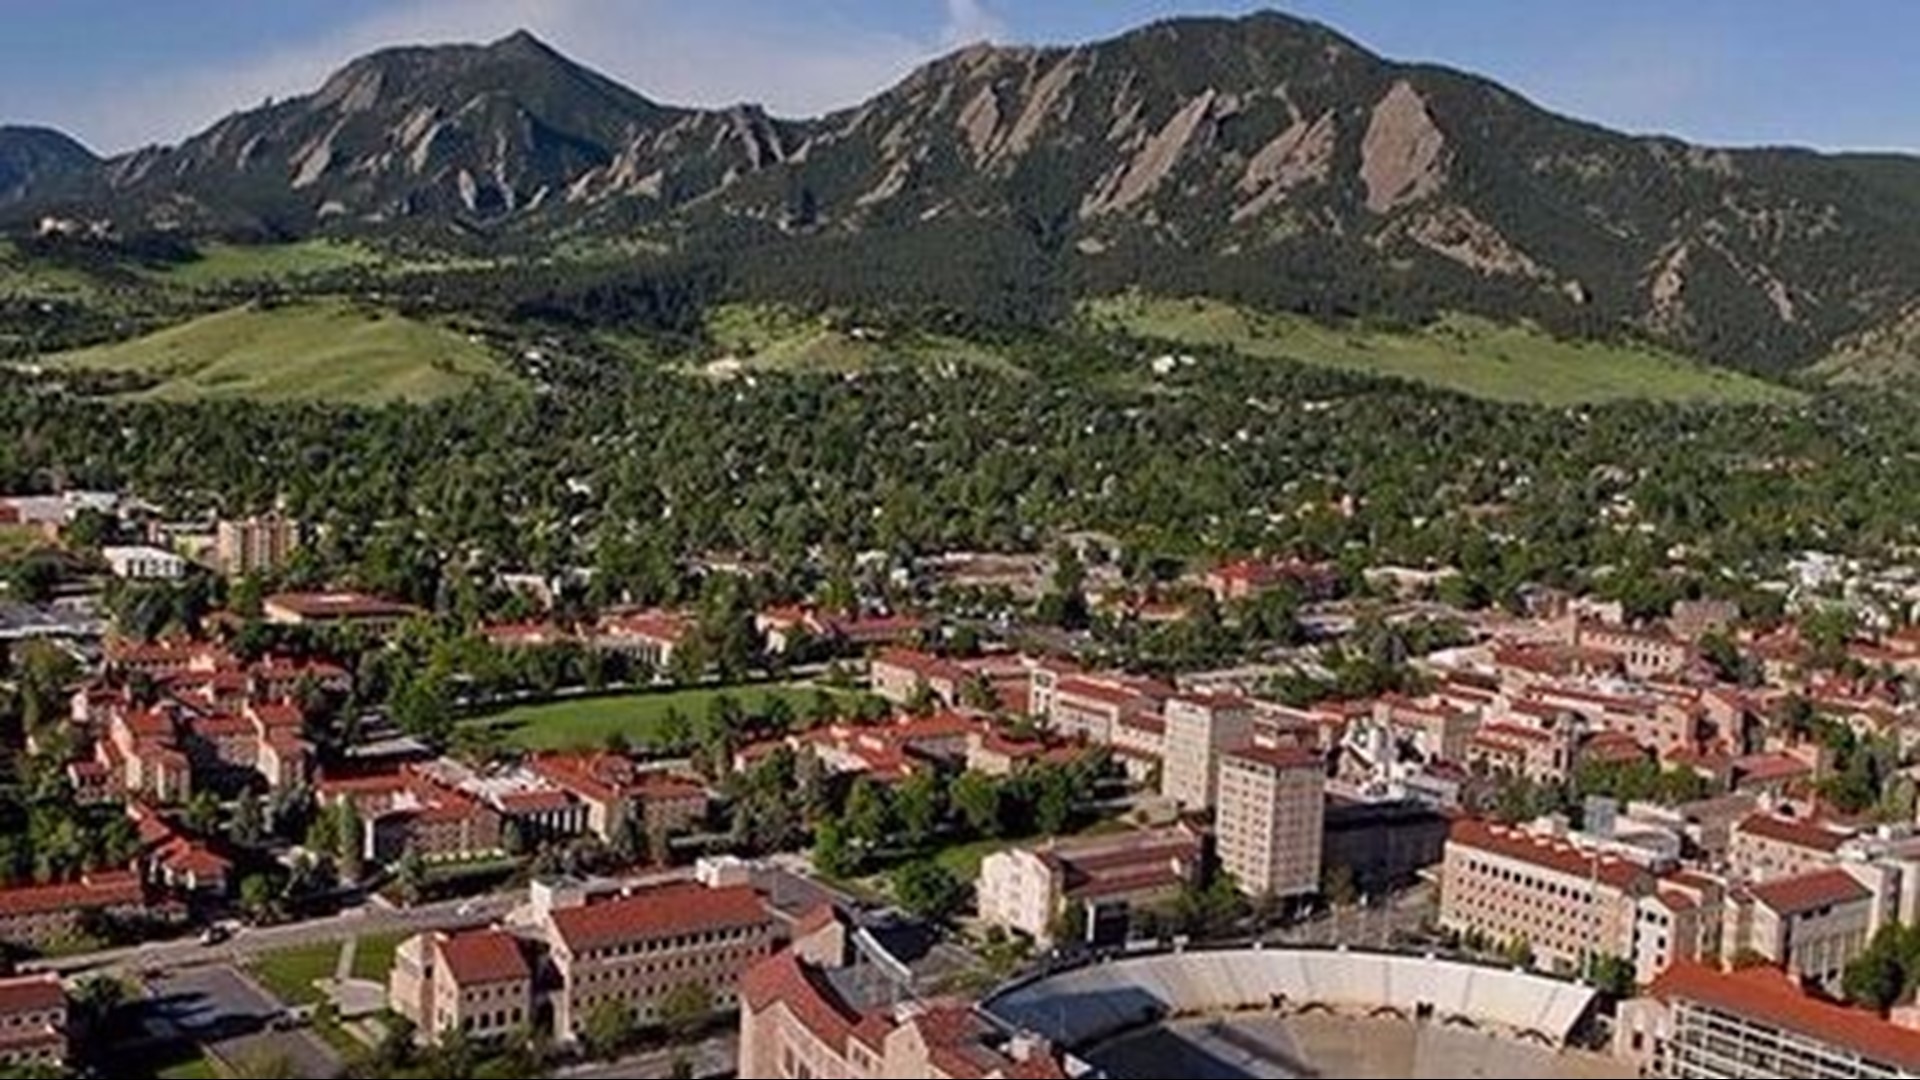 CU-Boulder spring commencement announced | 9news.com